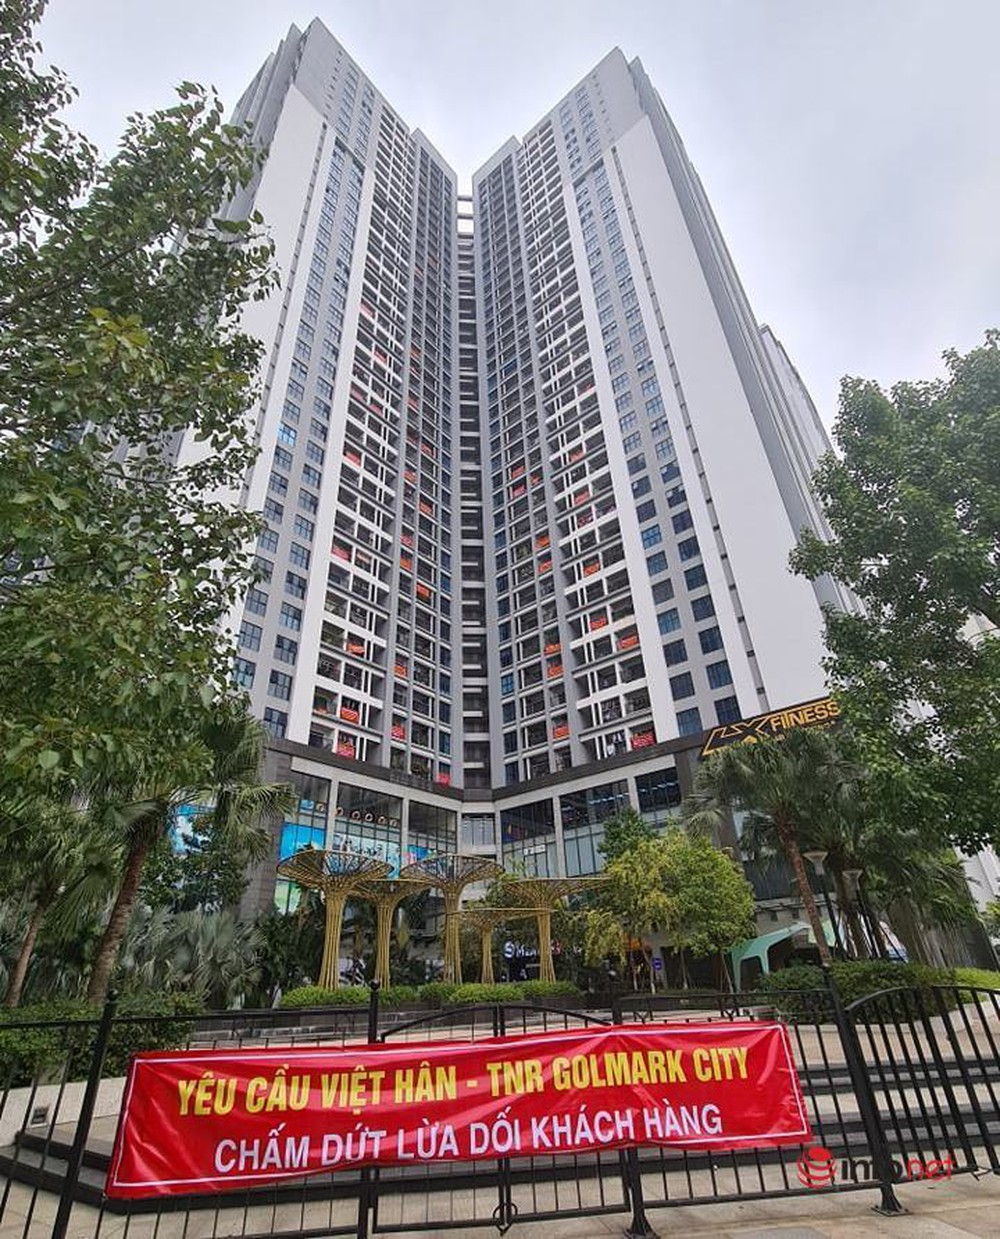 Cư dân Goldmark City ‘tố’ chủ đầu tư Việt Hân-TNR lừa dối, điều chỉnh dự án 5 tầng thành 40 tầng - Ảnh 2.